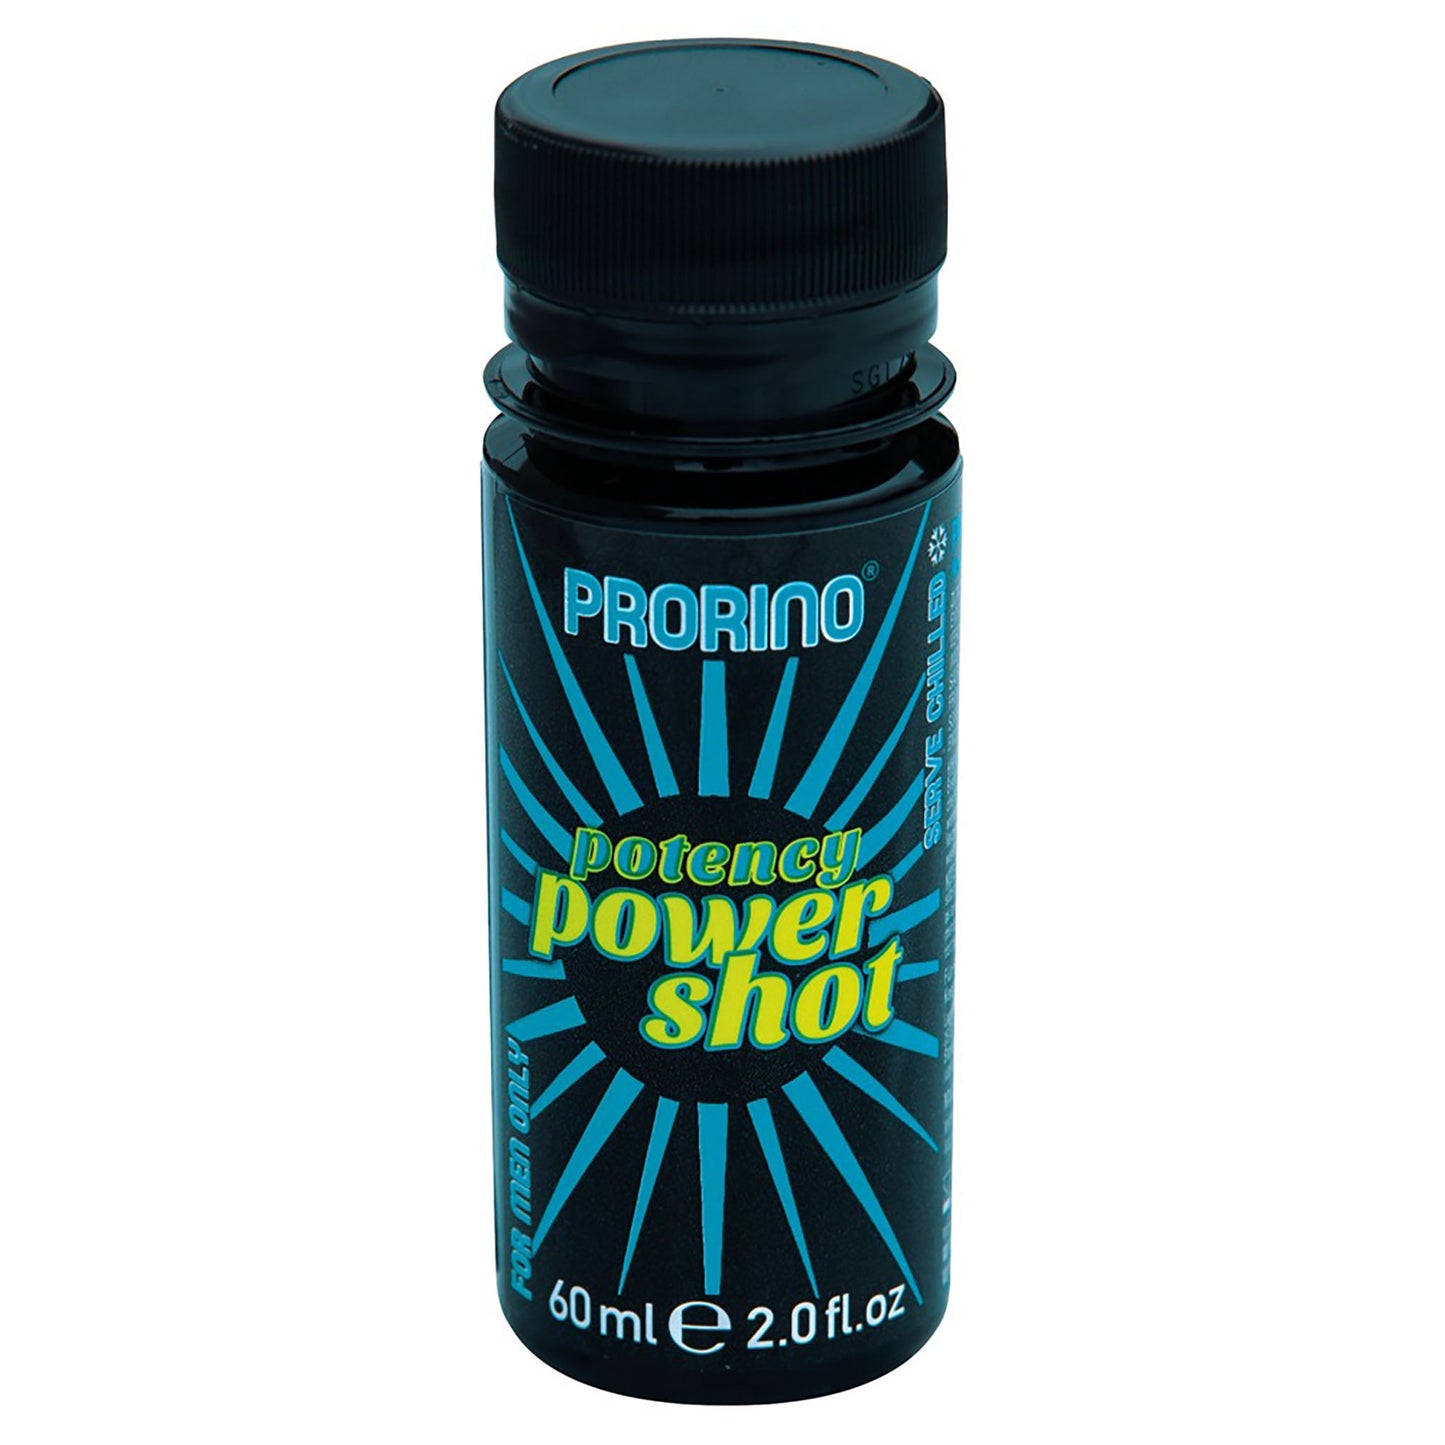 Potency Power Shot, potenzsteigernder Trunk in kleiner Flasche